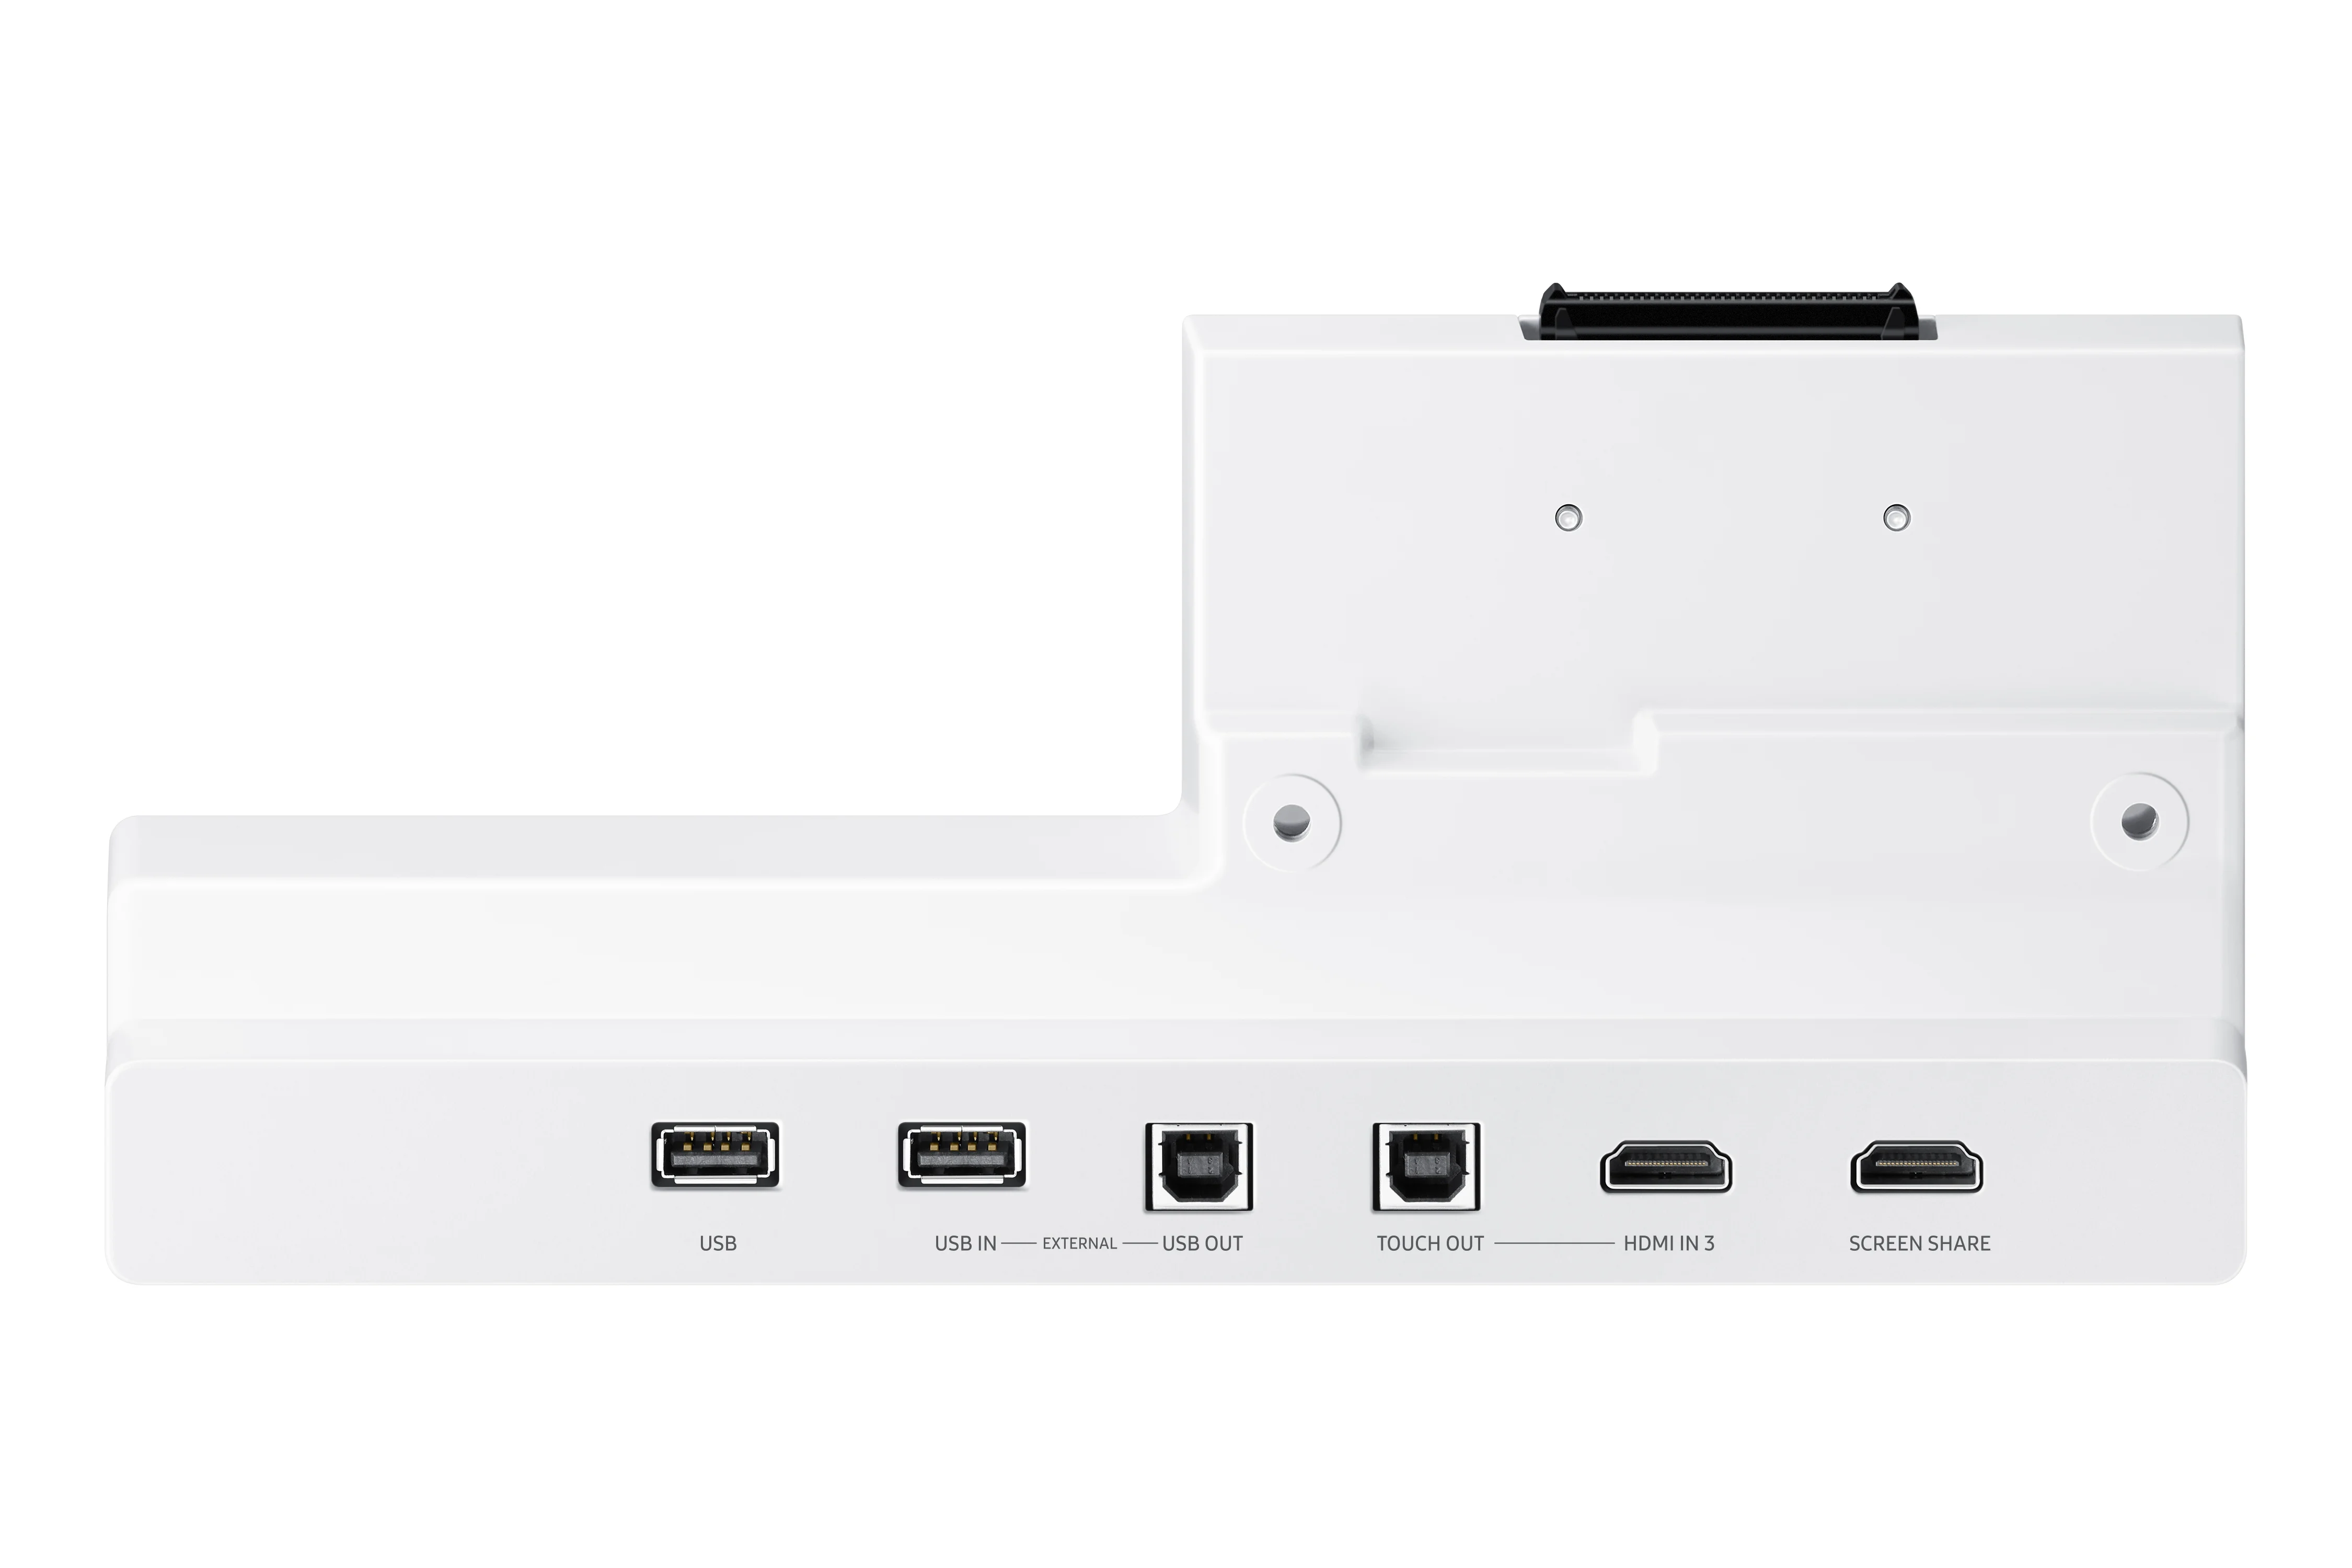 Tray conectivitate pentru tabla interactiva Samsung Flip Pro 55 65 ; USB-C, USB-In, USB-External, Touch-Out, HDMI-In; aduce mufele din spate in fata pentru convenienta.